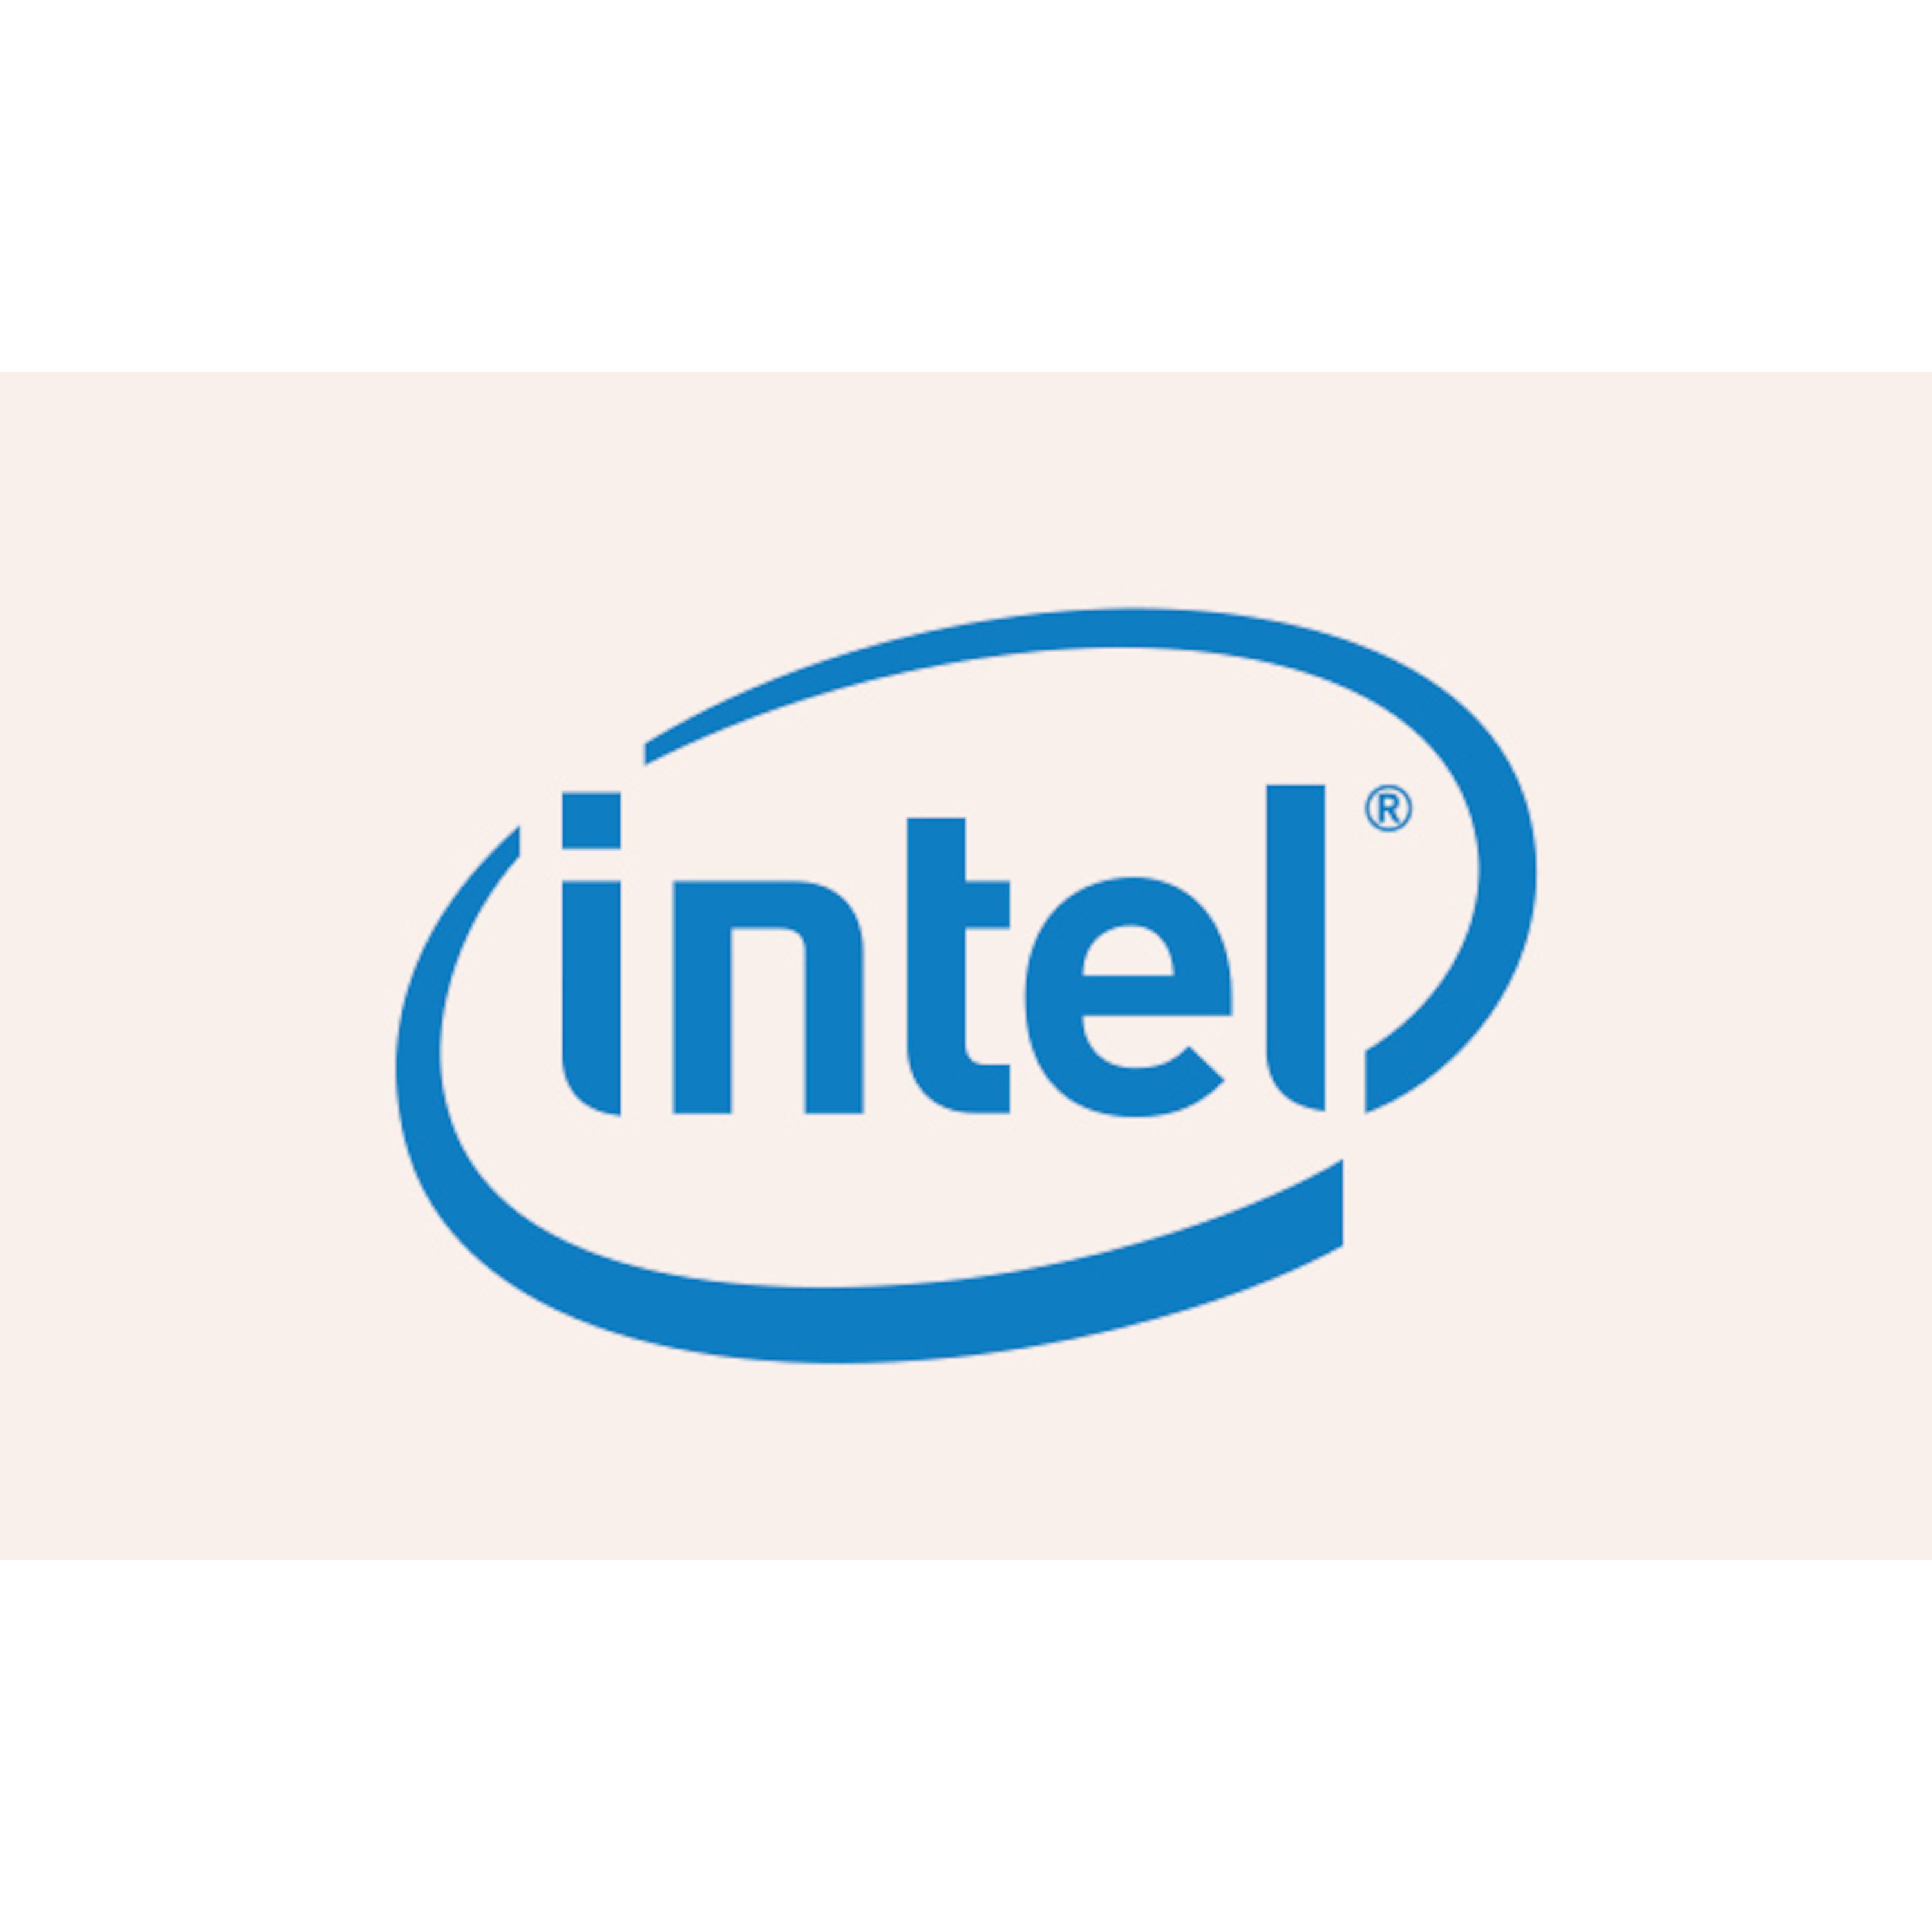 Intel® Pentium® Prozessor